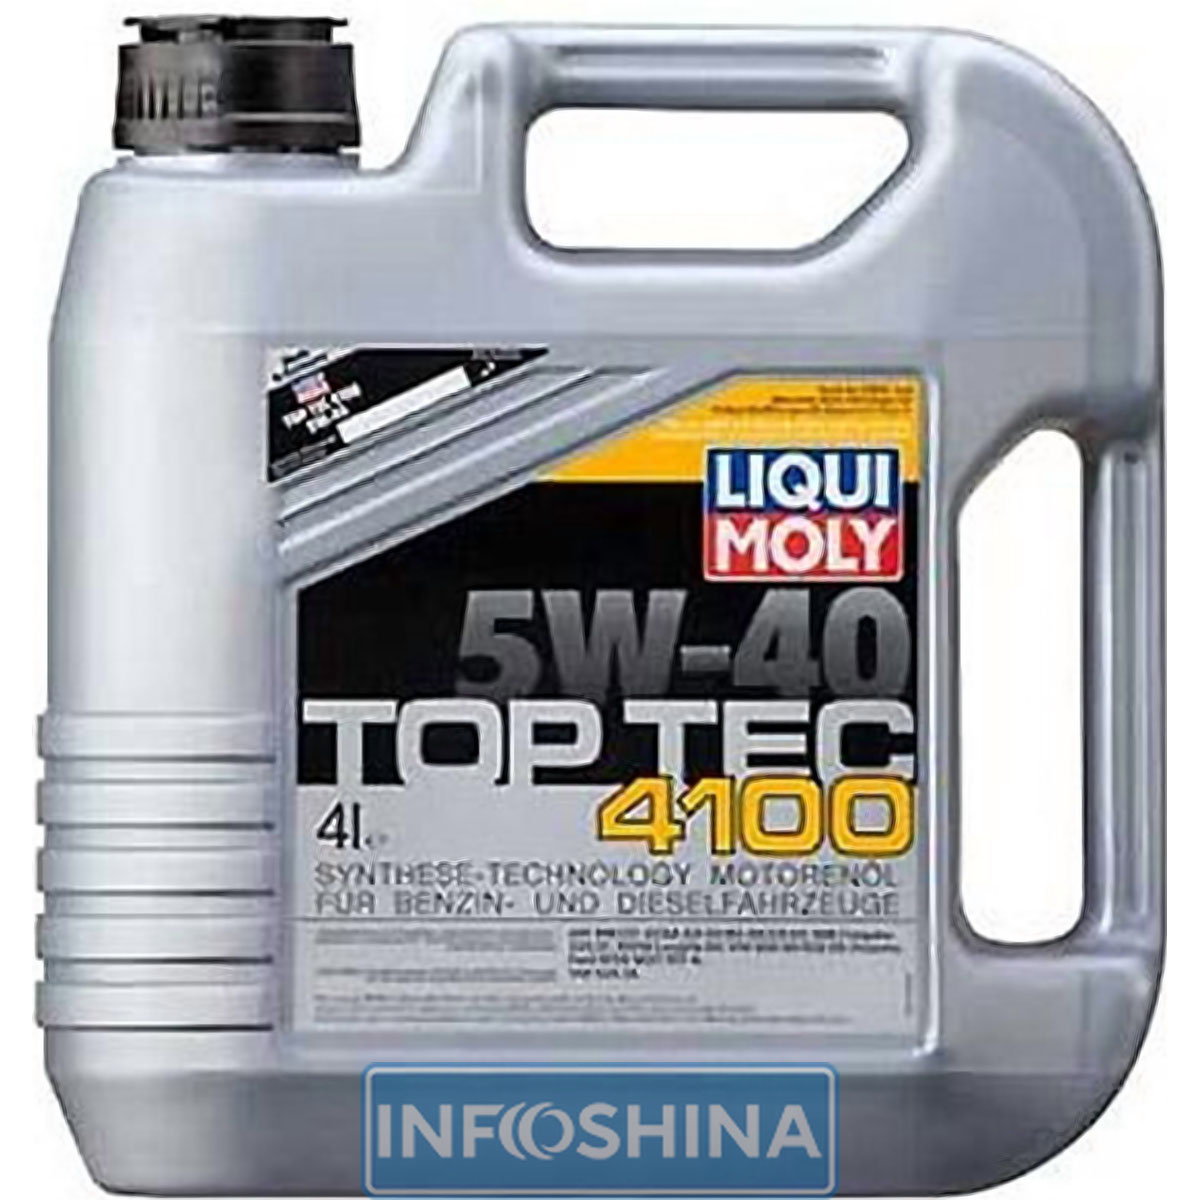 Купить масло Liqui Moly Top Tec 4100 5W-40 (4л)